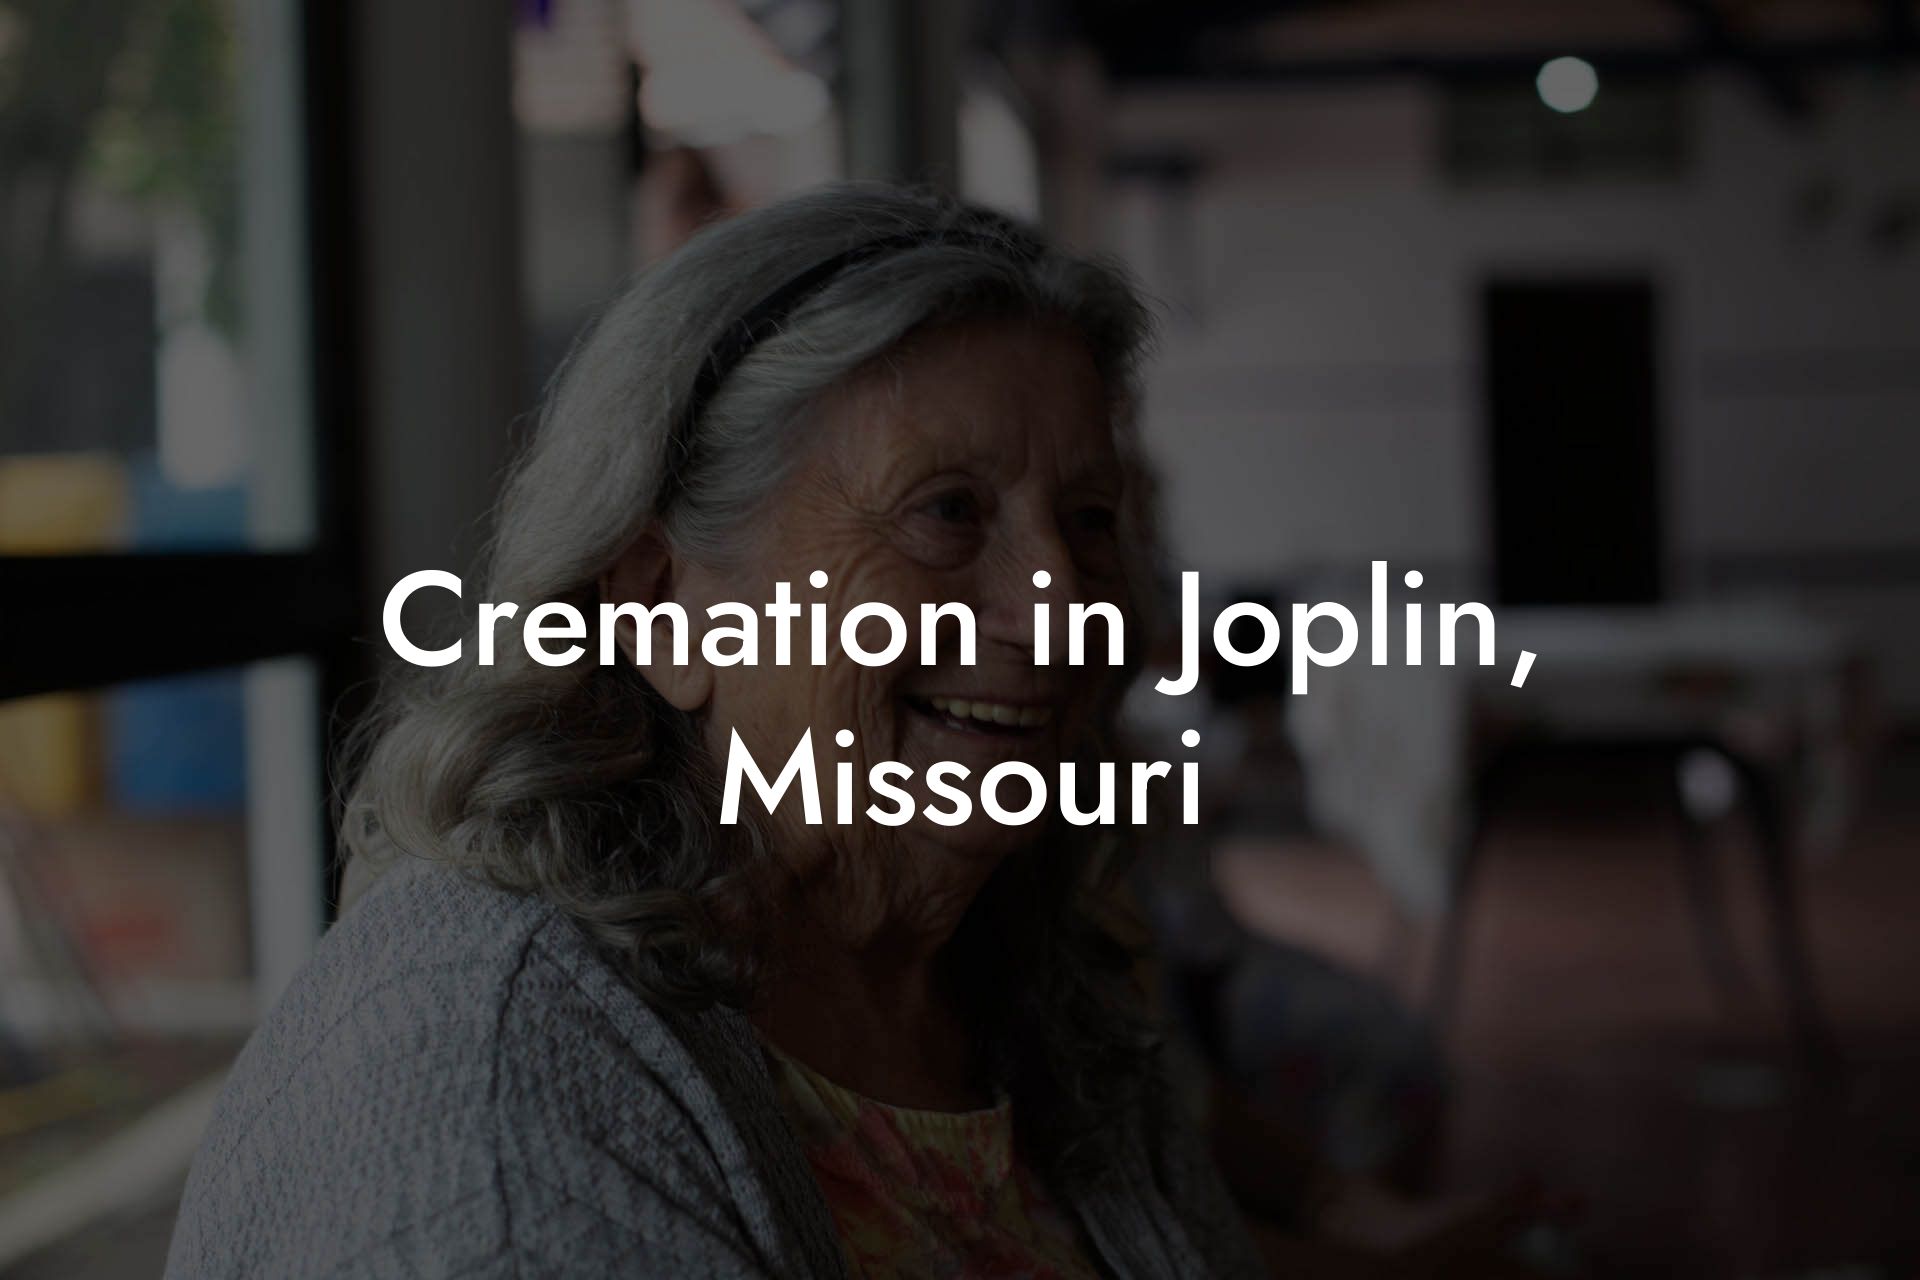 Cremation in Joplin, Missouri